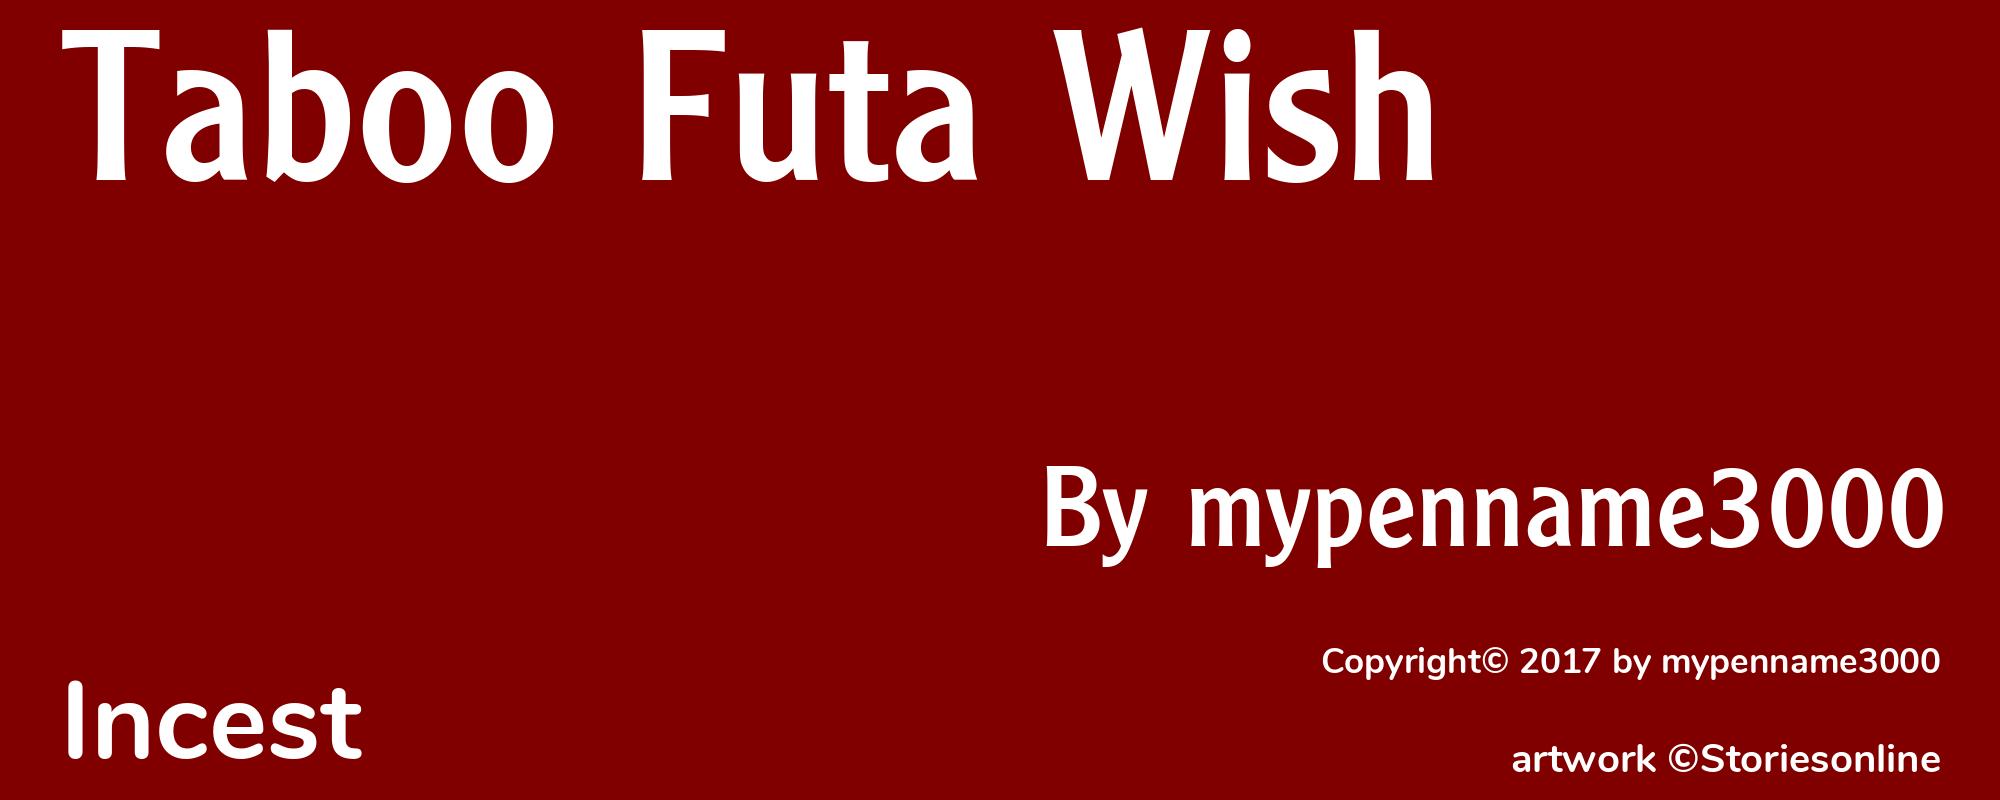 Taboo Futa Wish - Cover